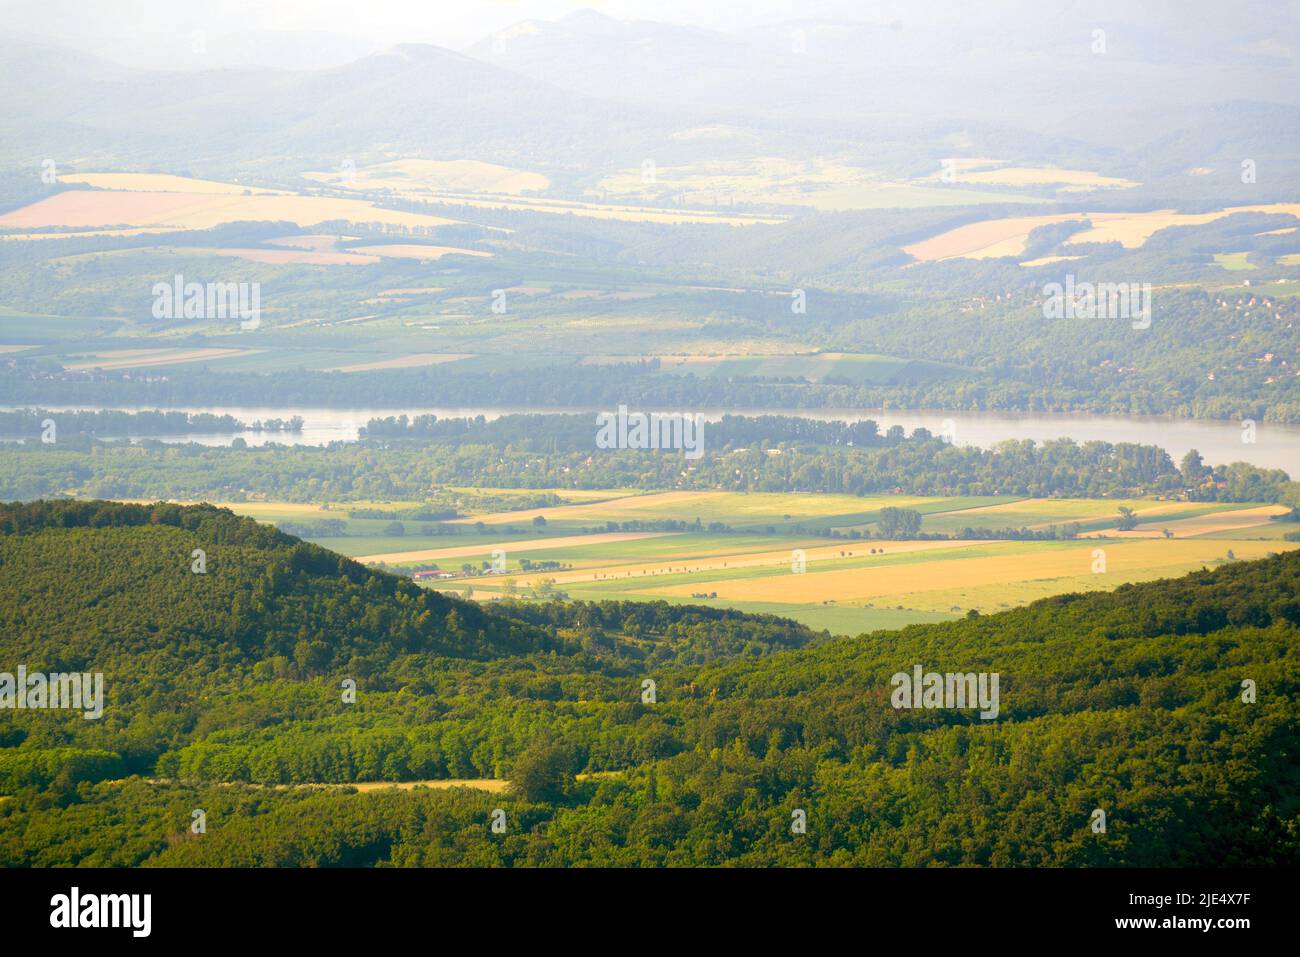 Danube river in the valley Stock Photo